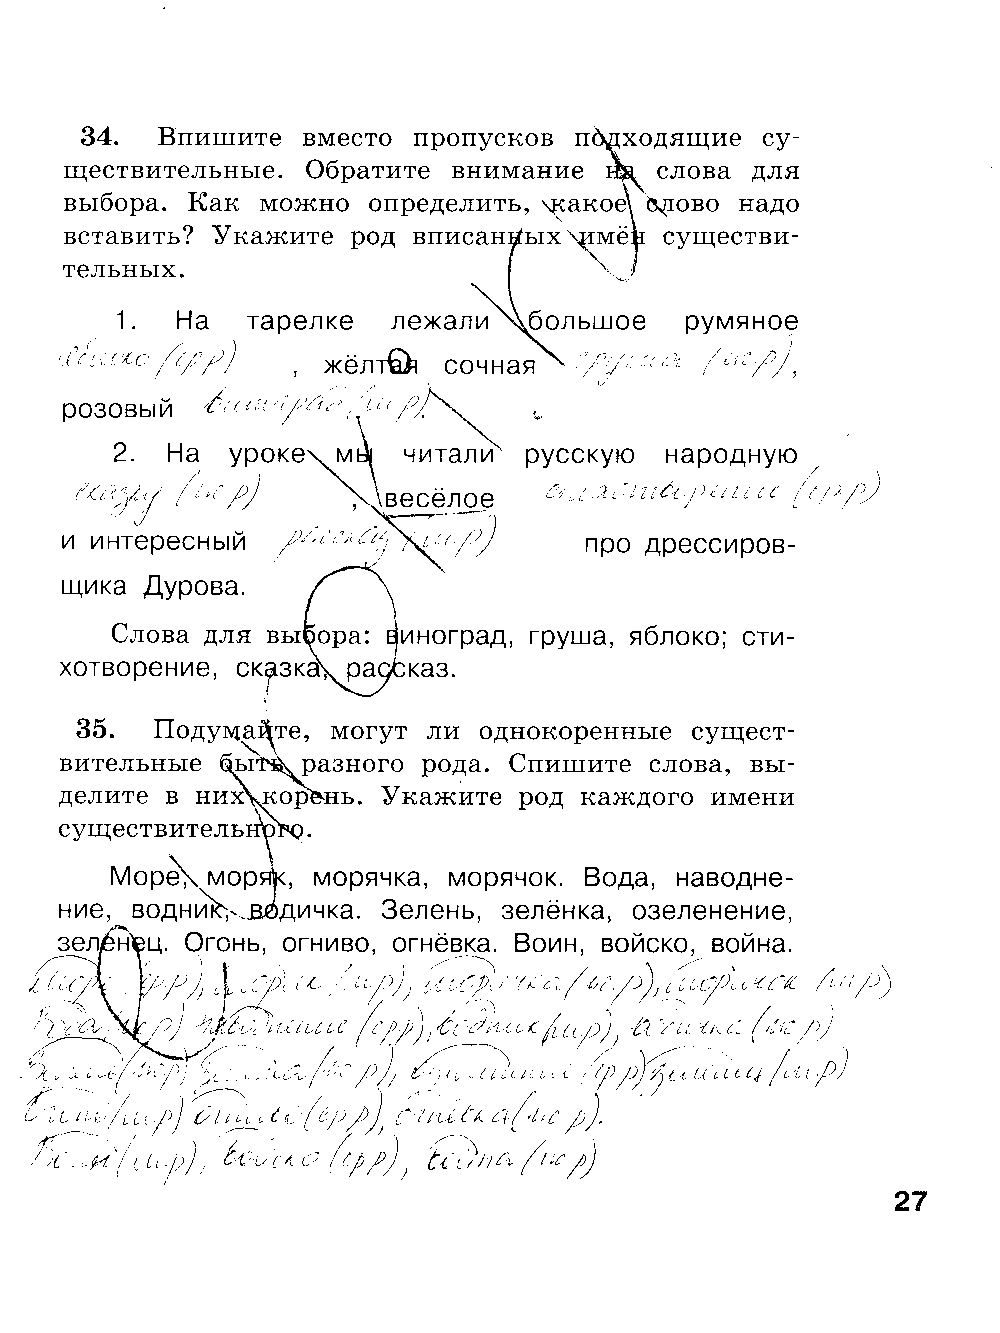 ГДЗ Русский язык 3 класс - стр. 27